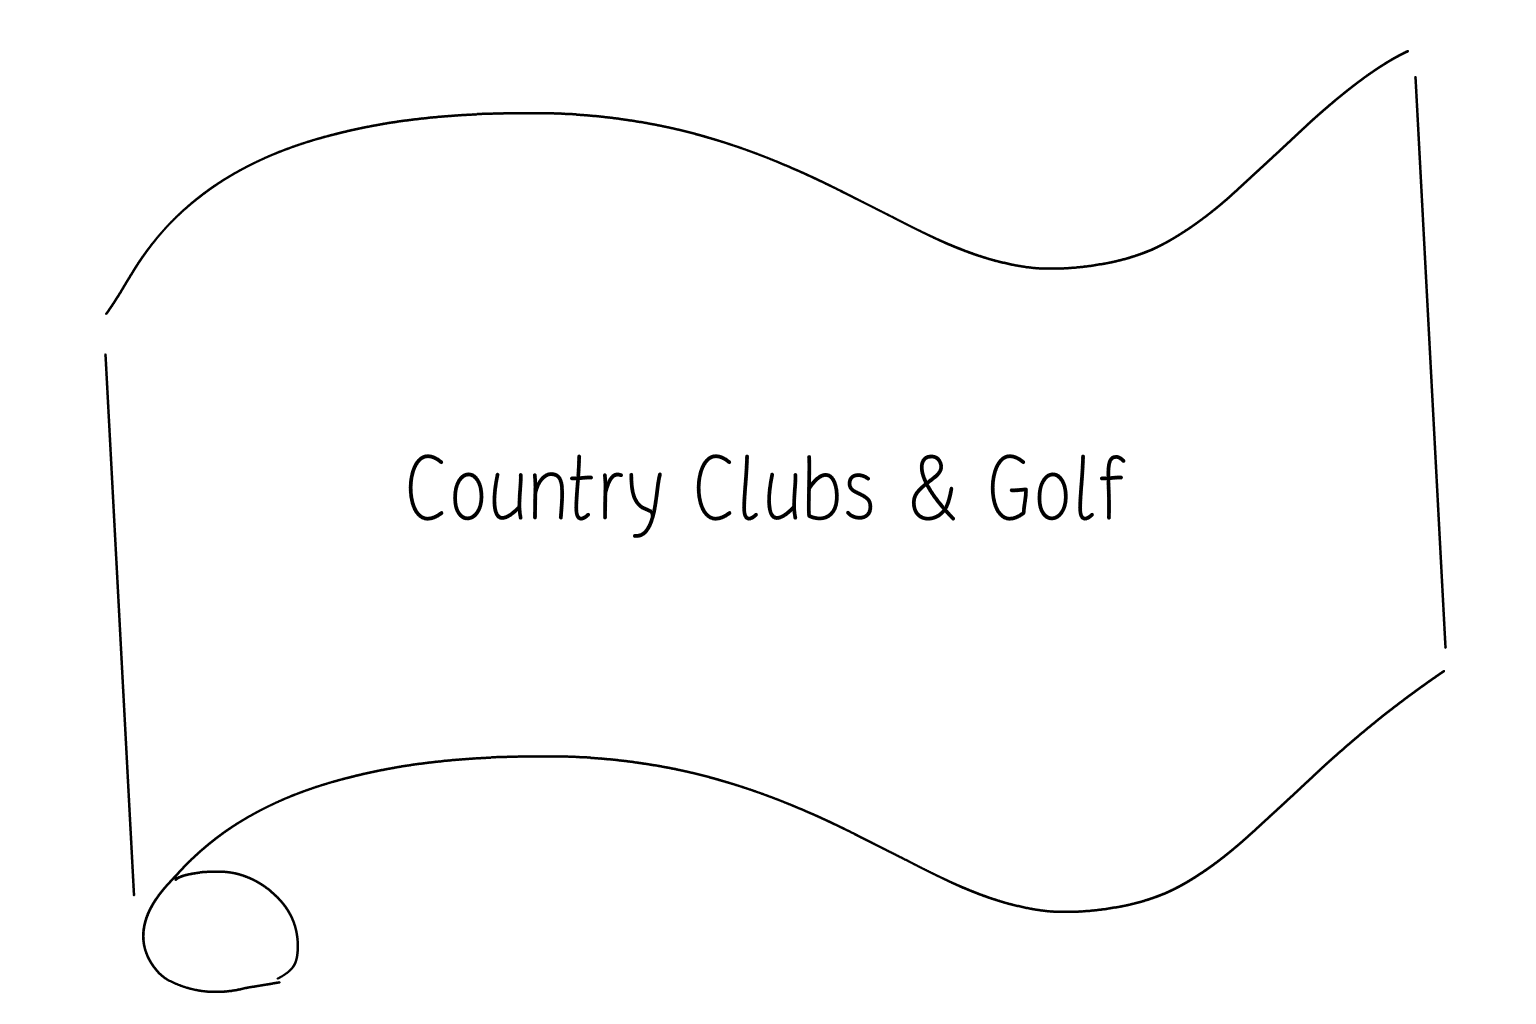 Иллюстрация свадебного загородного клуба и гольфа